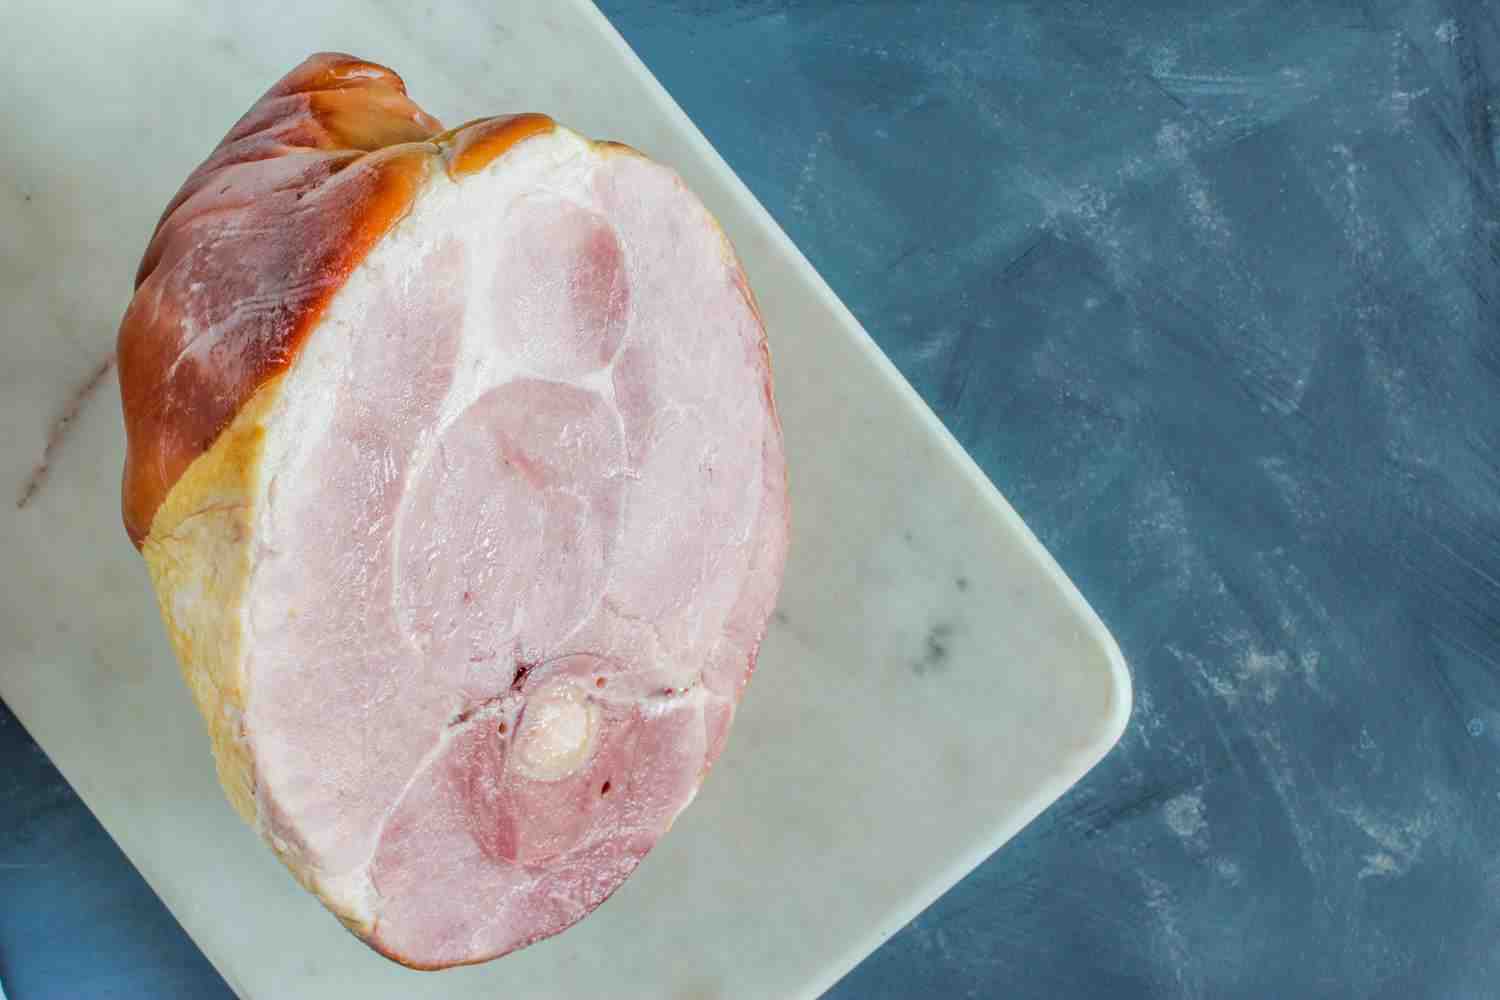 Does fresh ham taste like pork?